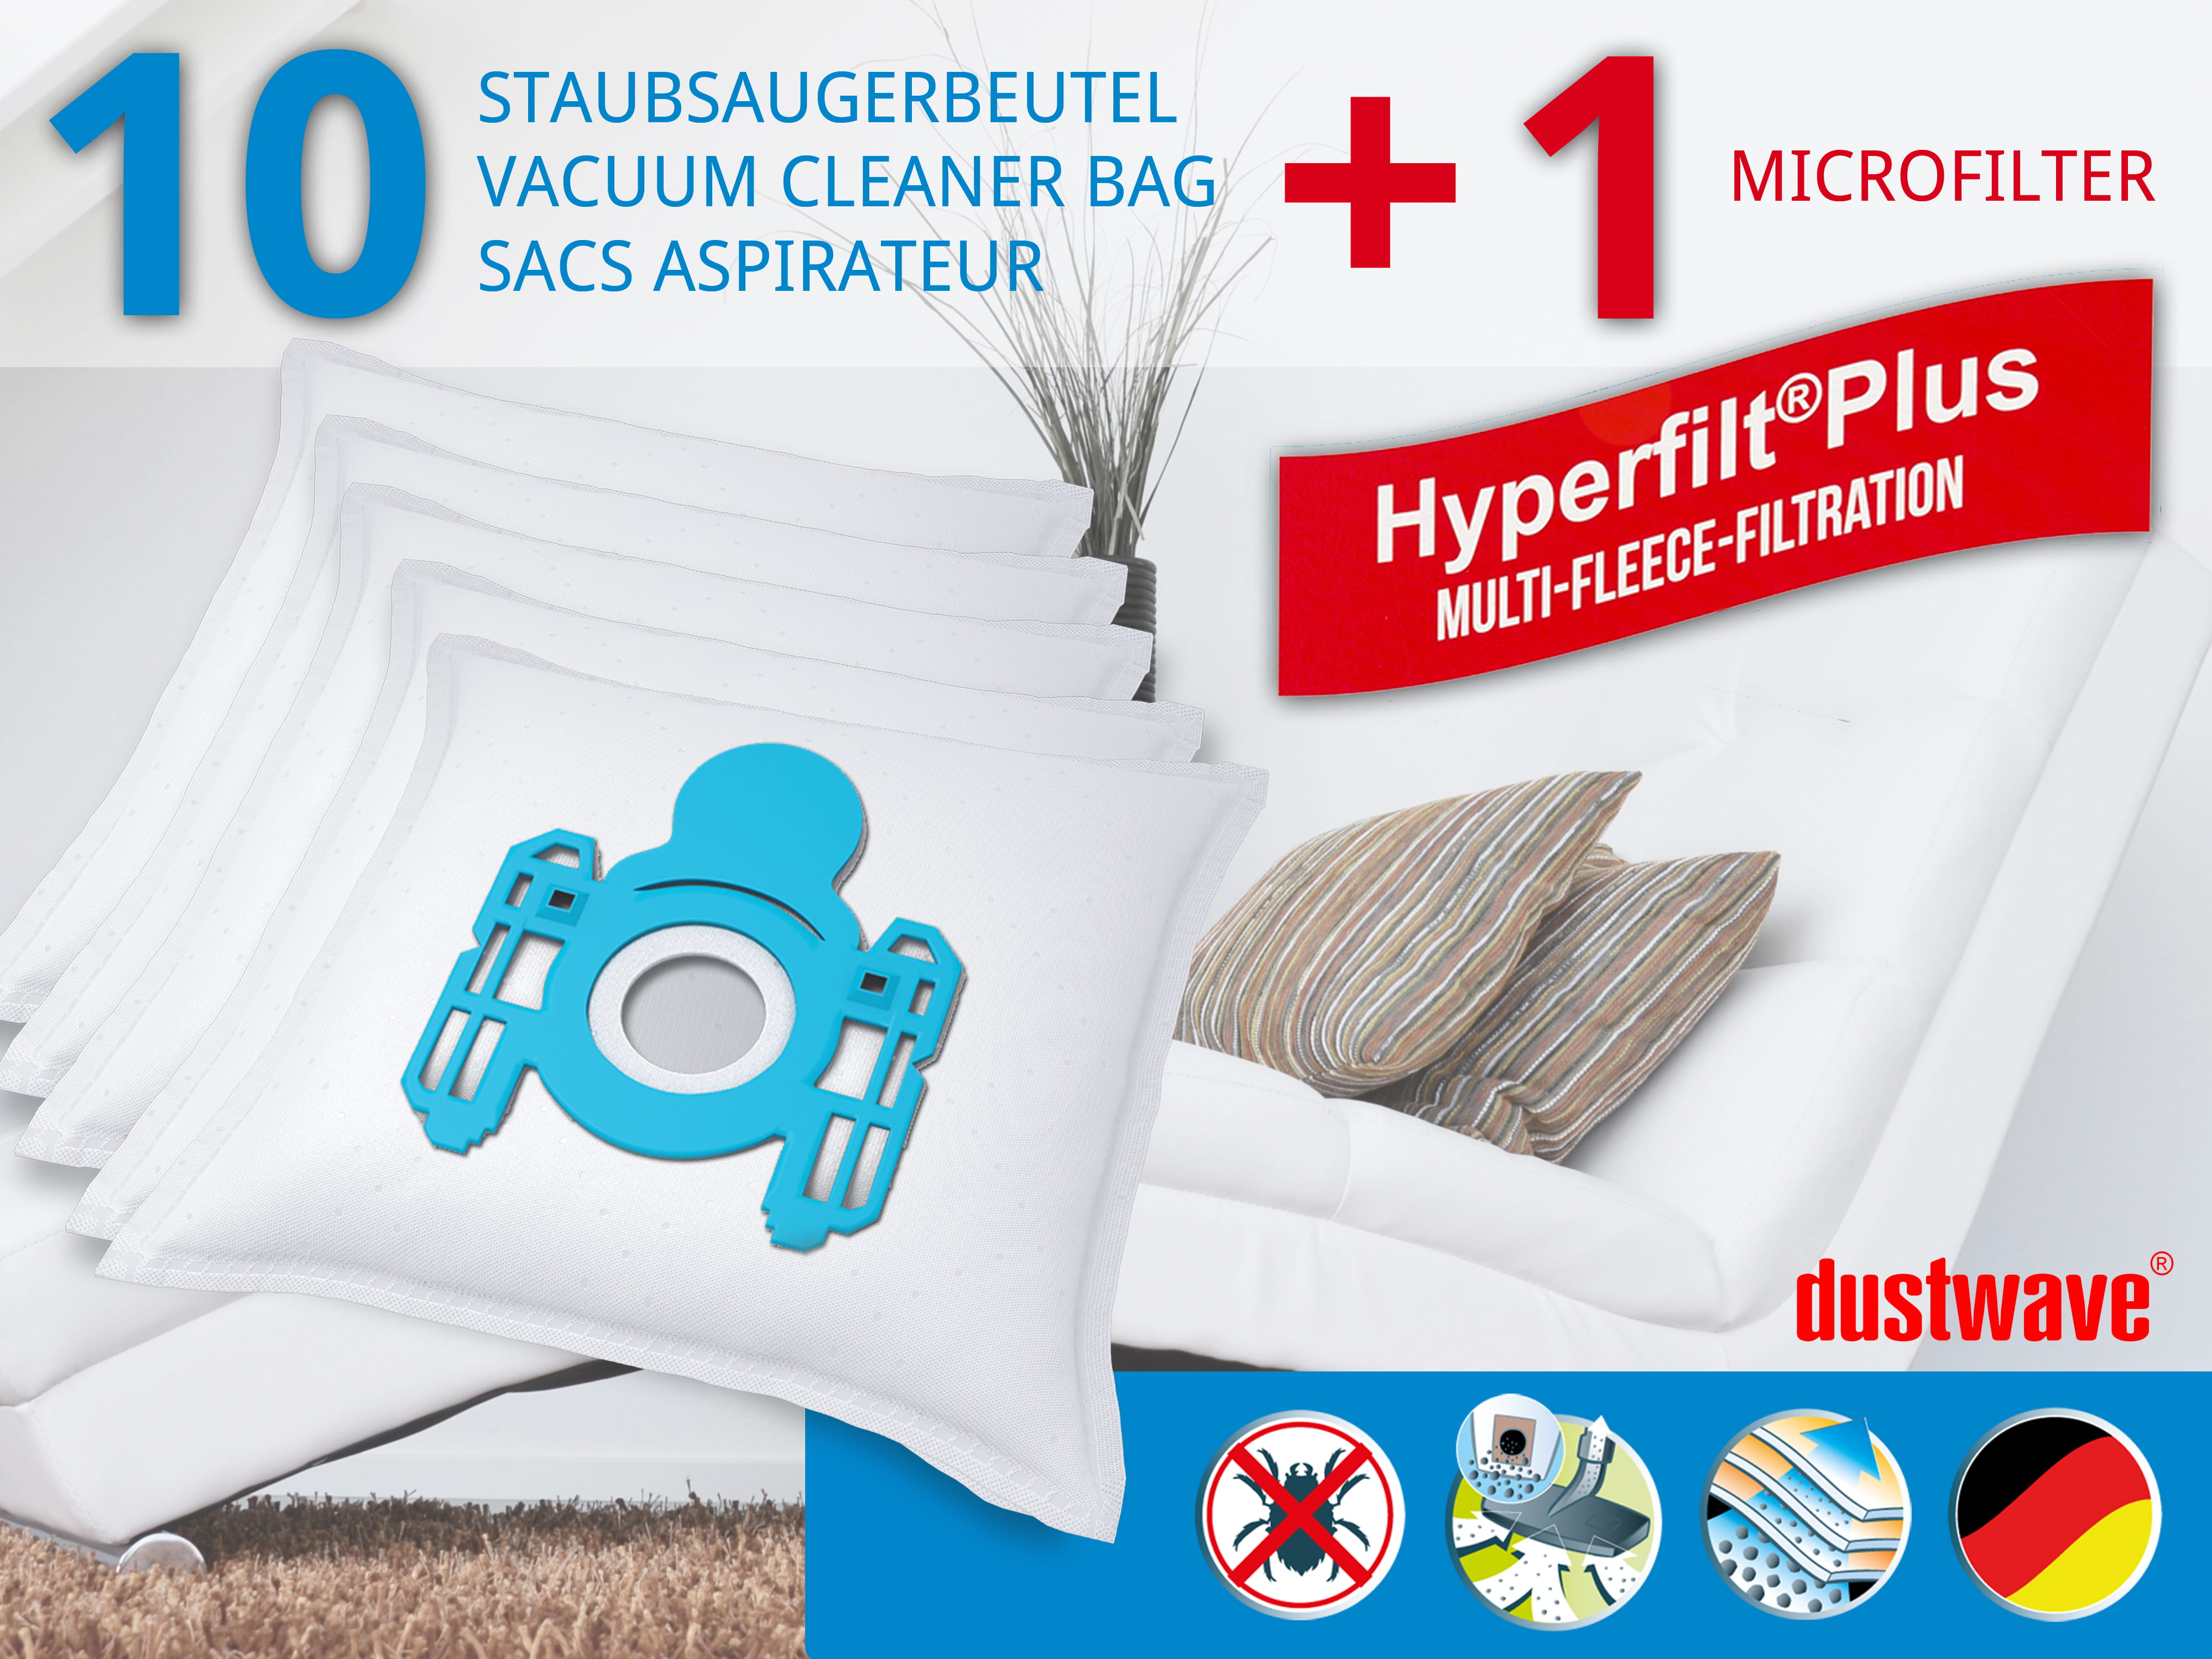 Dustwave® 10 Staubsaugerbeutel für AEG Vampyr CE Azzurro - hocheffizient, mehrlagiges Mikrovlies mit Hygieneverschluss - Made in Germany